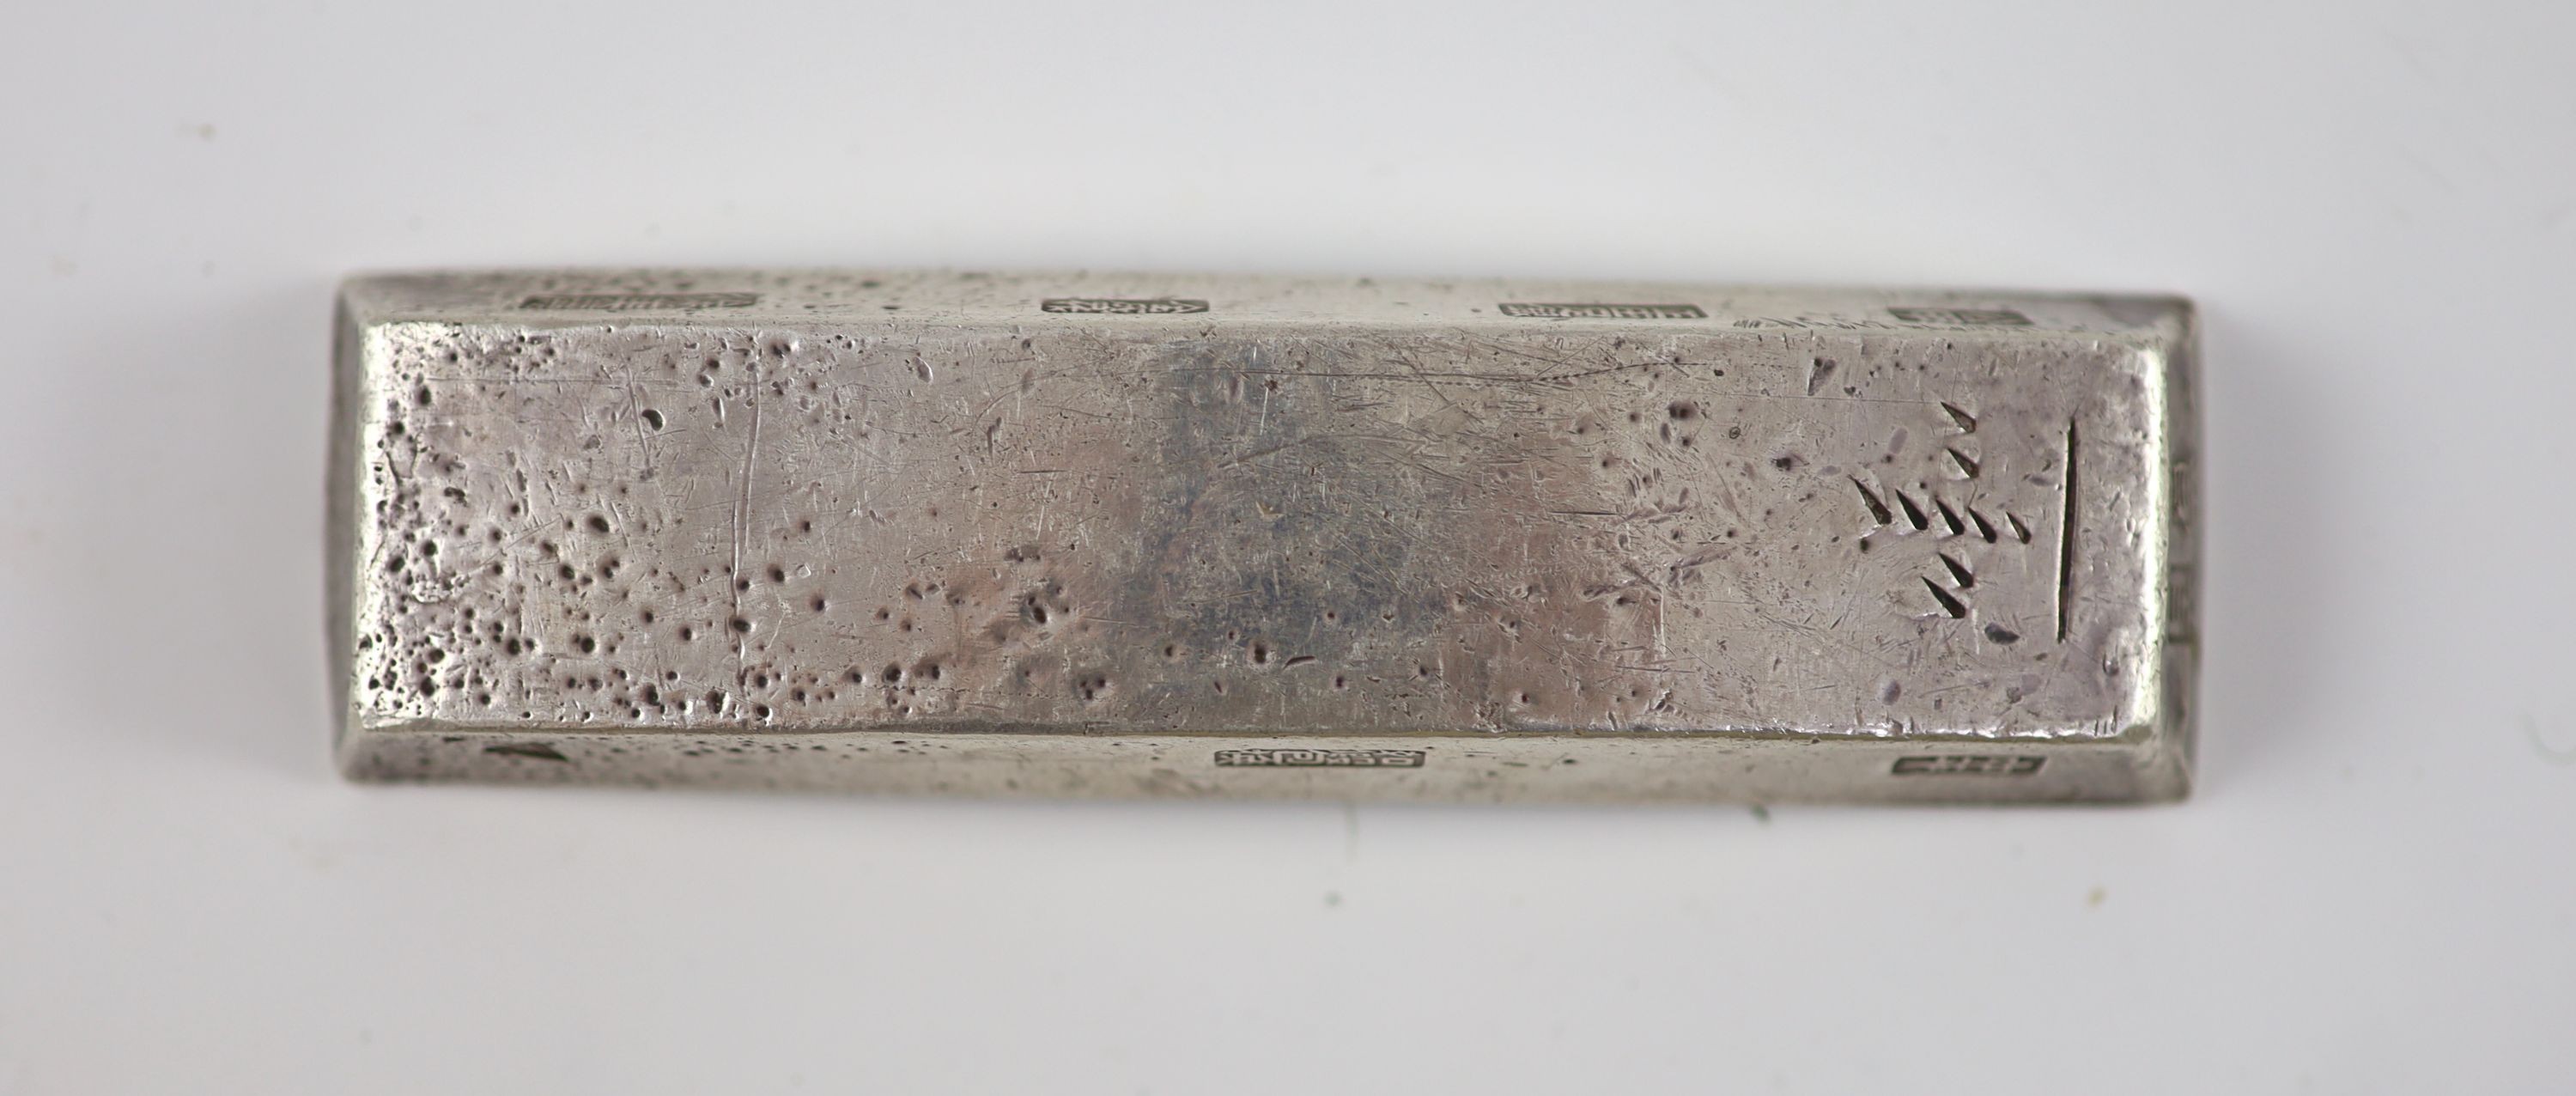 Annam (Vietnam) 10 Lang silver bar, 112mm x 30mm, 376g